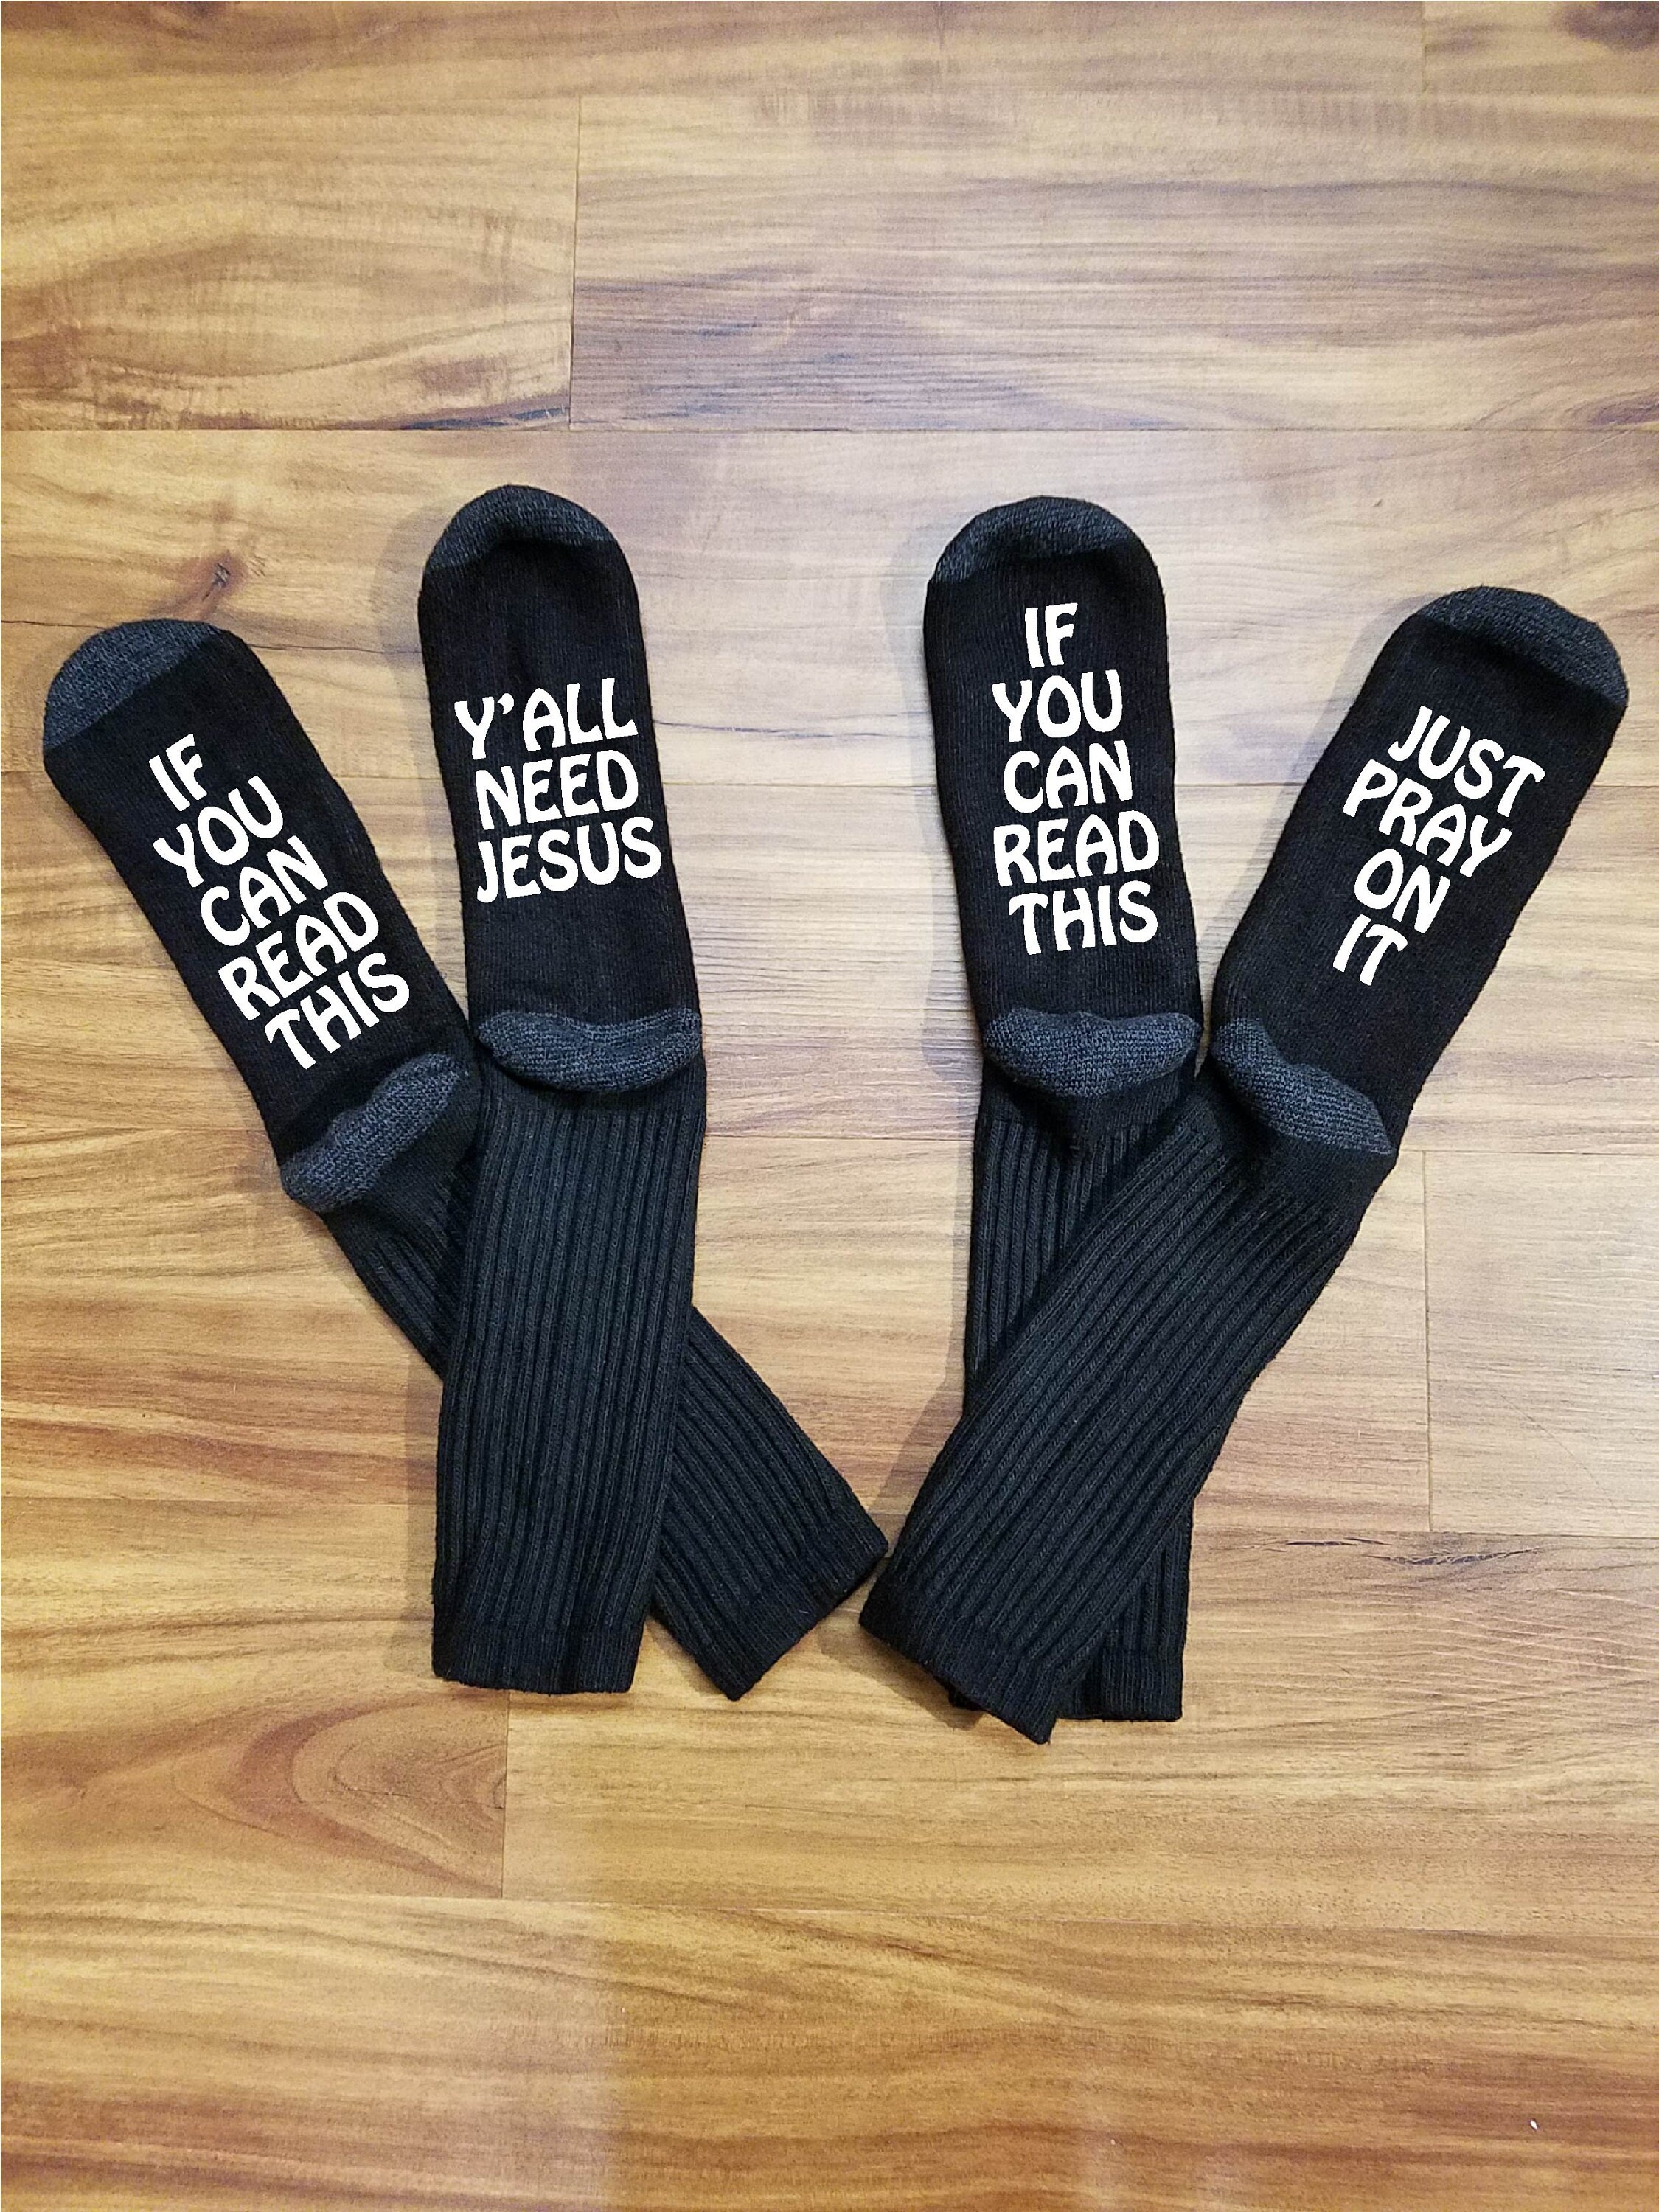 Christian Gifts for Men Jesus Gifts Faith Serenity Prayer Gifts, Funny Christian Socks Religious Socks for Men